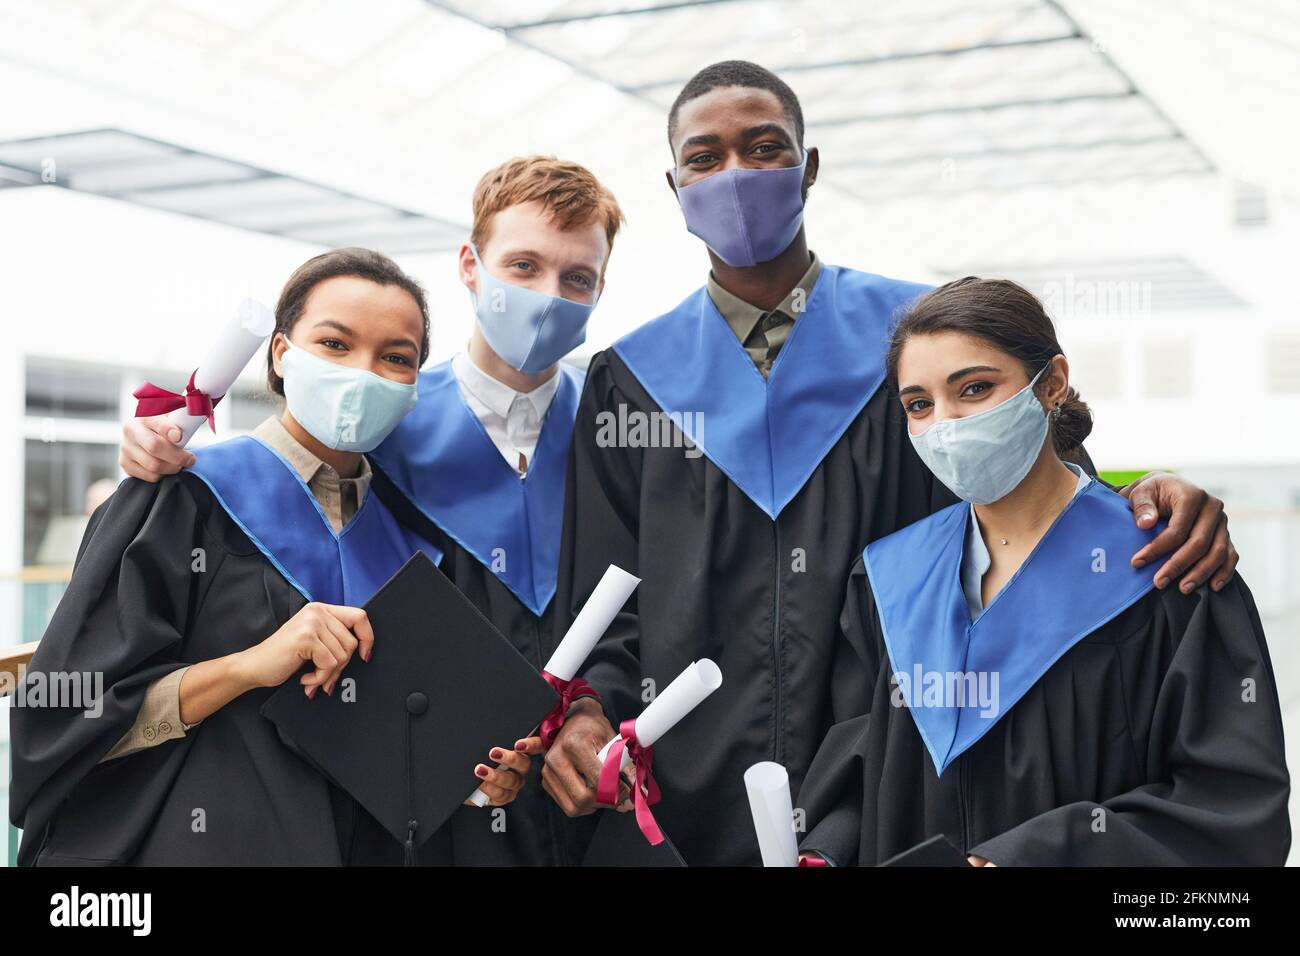 Groupe diversifié de jeunes portant des robes et des masques de remise des diplômes tout en regardant la caméra à l'intérieur de l'université Banque D'Images